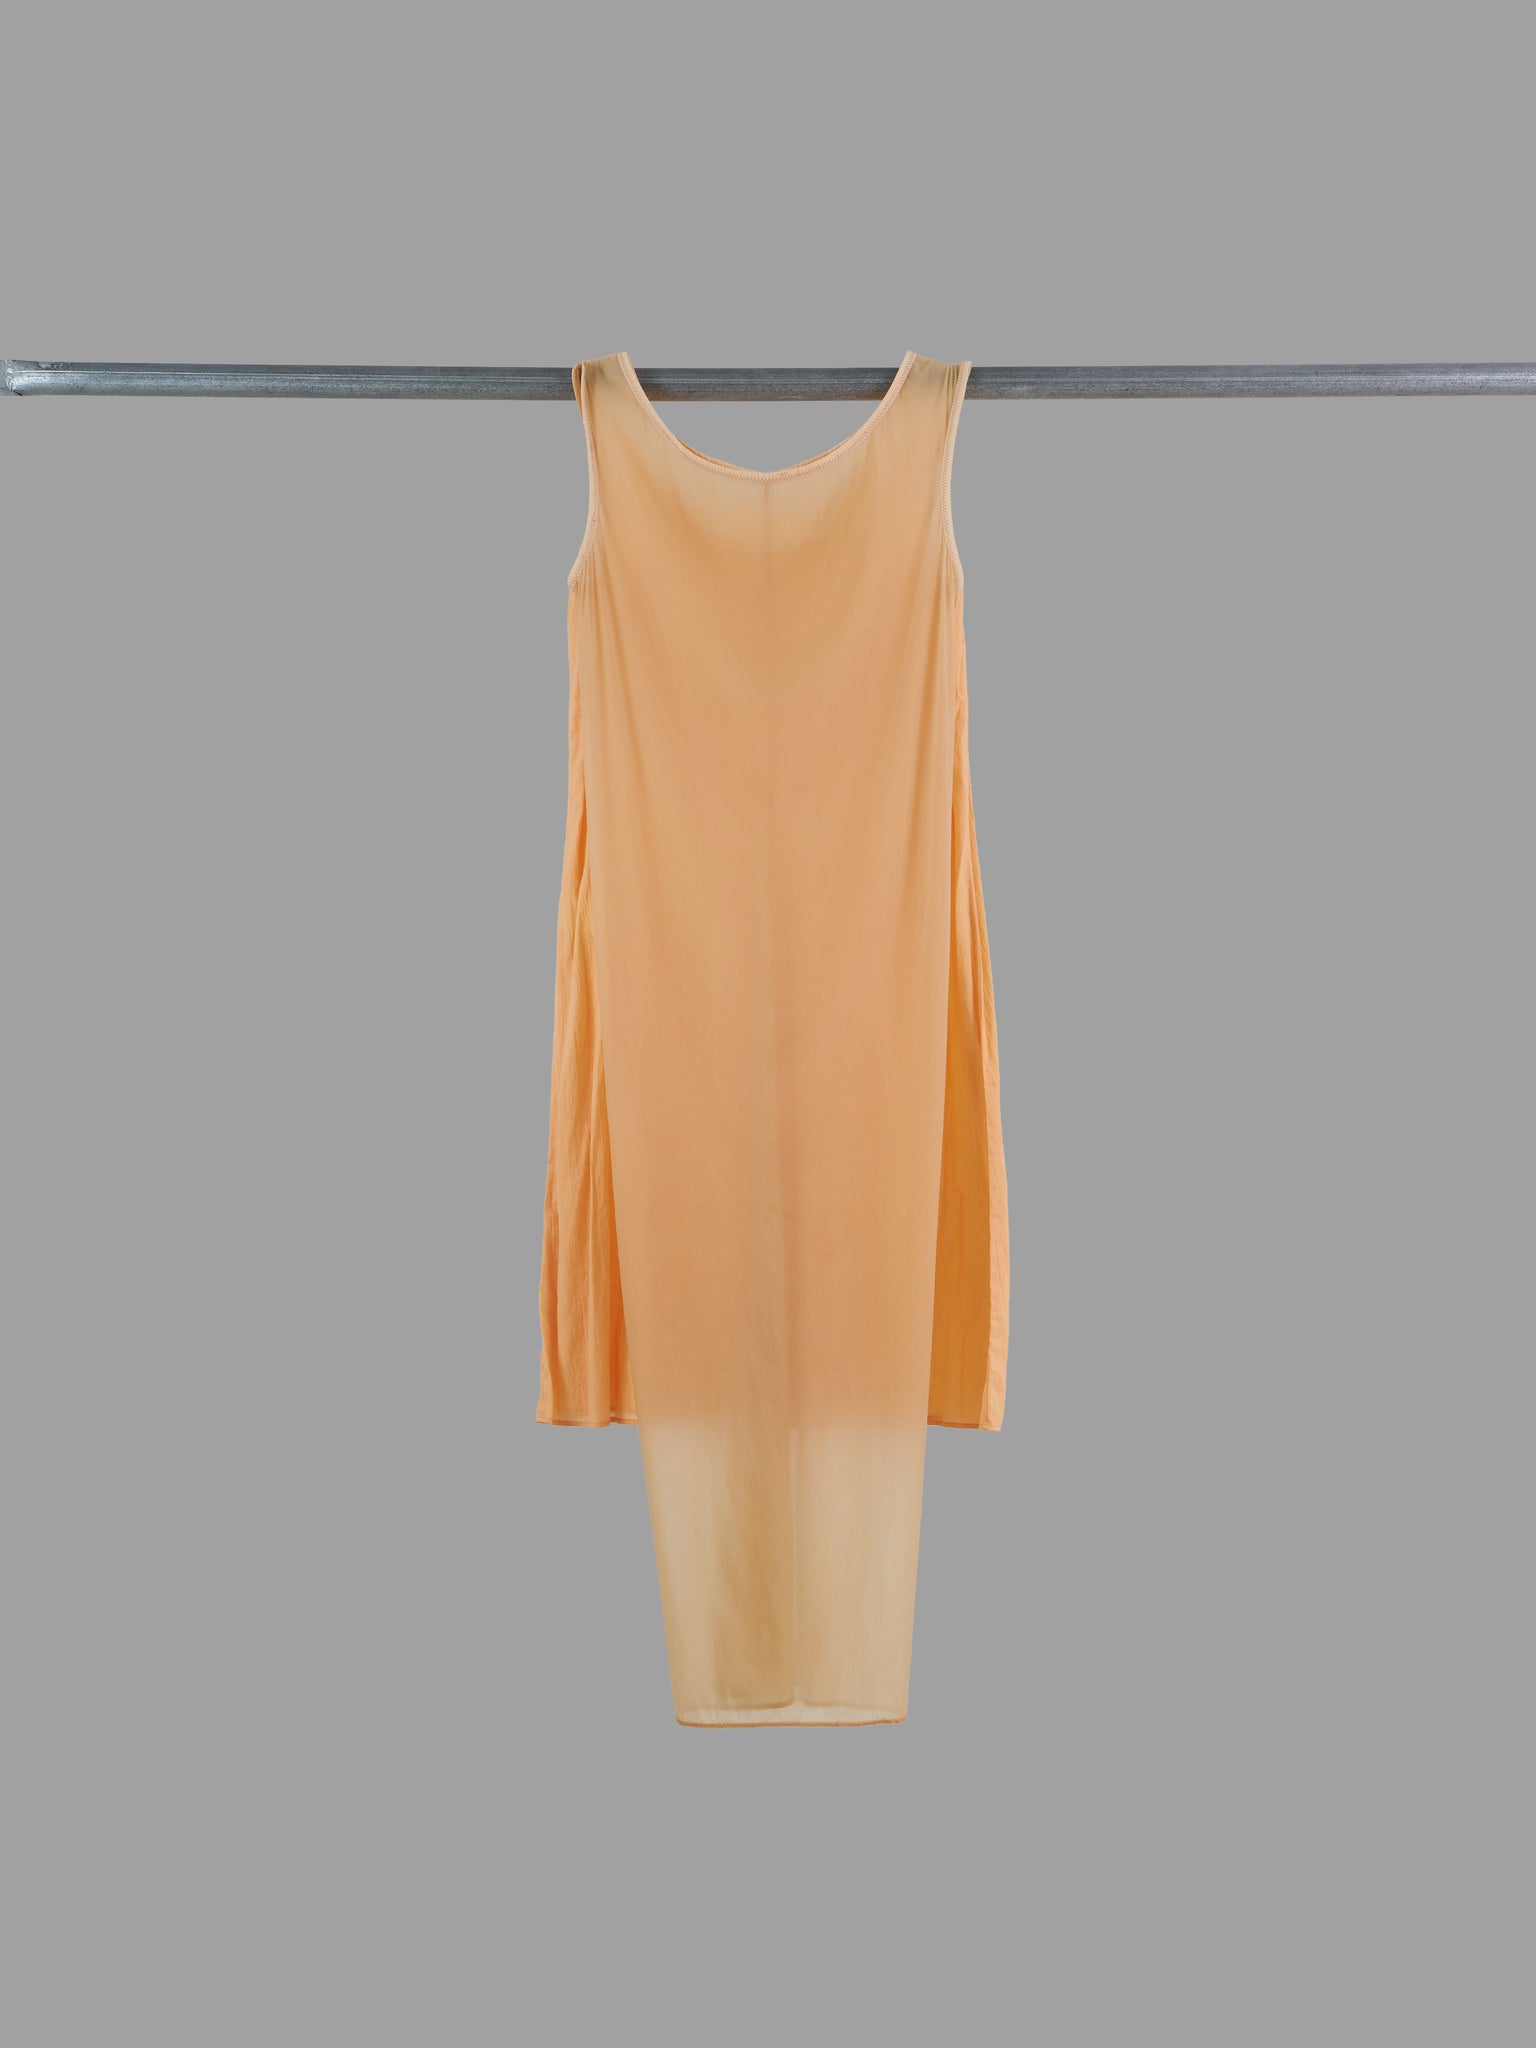 Issey Miyake apricot double layered knit sleeveless dress - S M